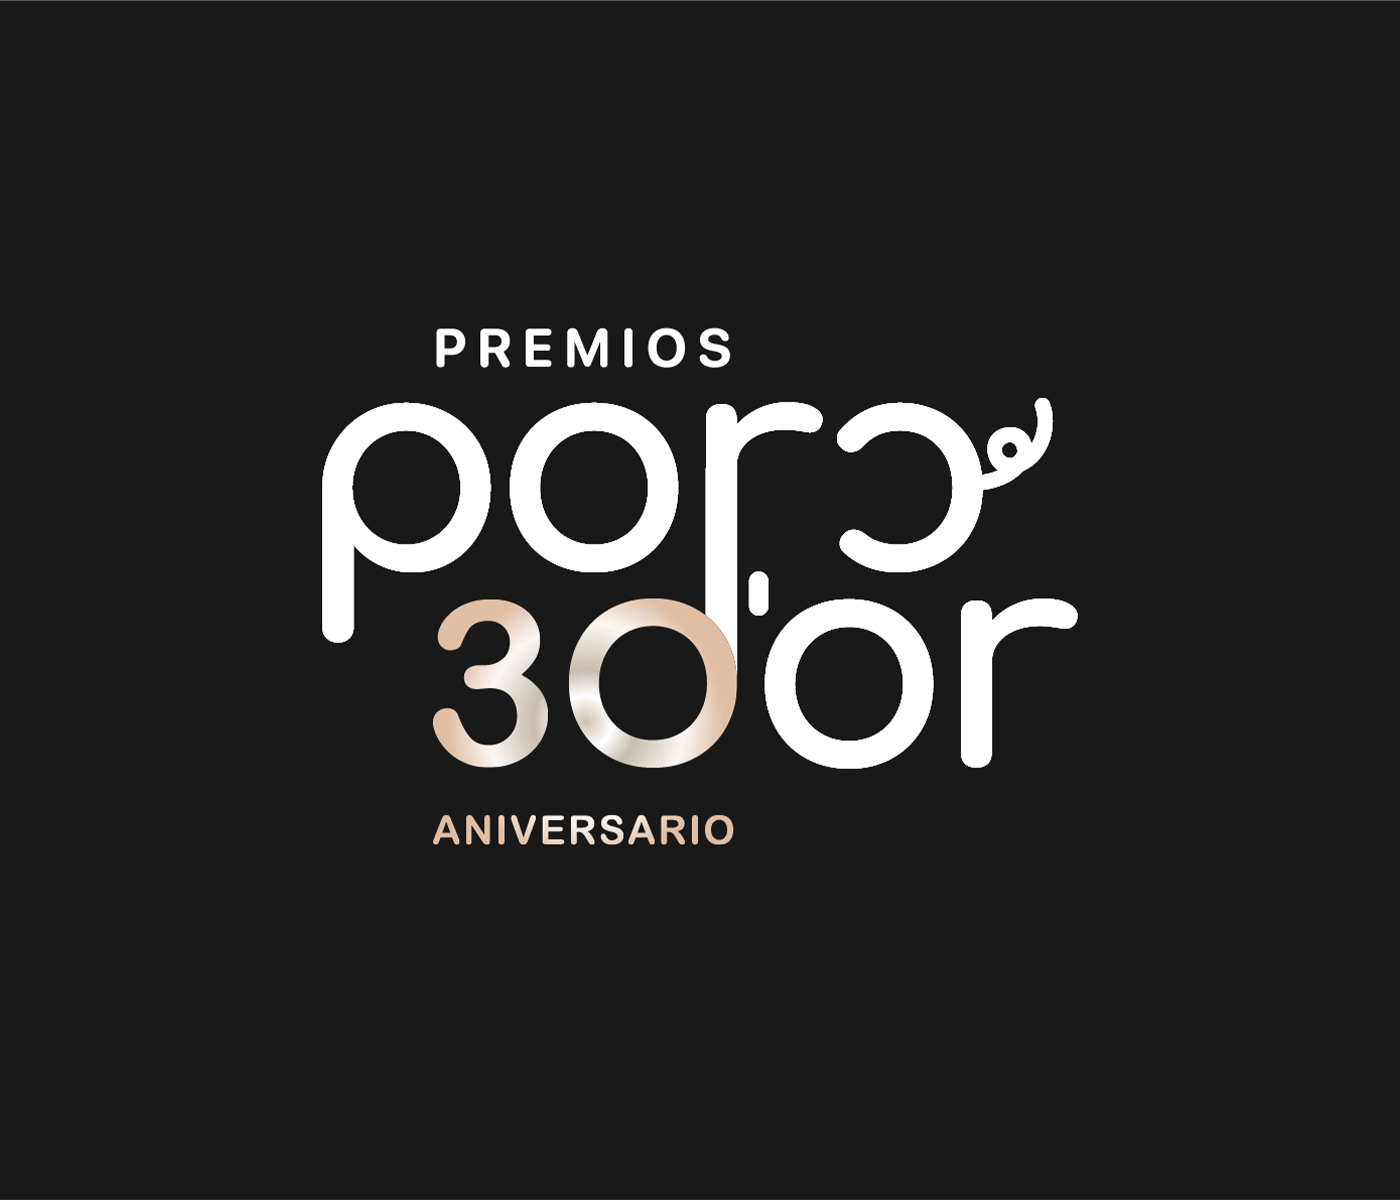 Aragón triunfa en la 30ª edición de los Premios Porc d’Or, seguido de Cataluña y Galicia